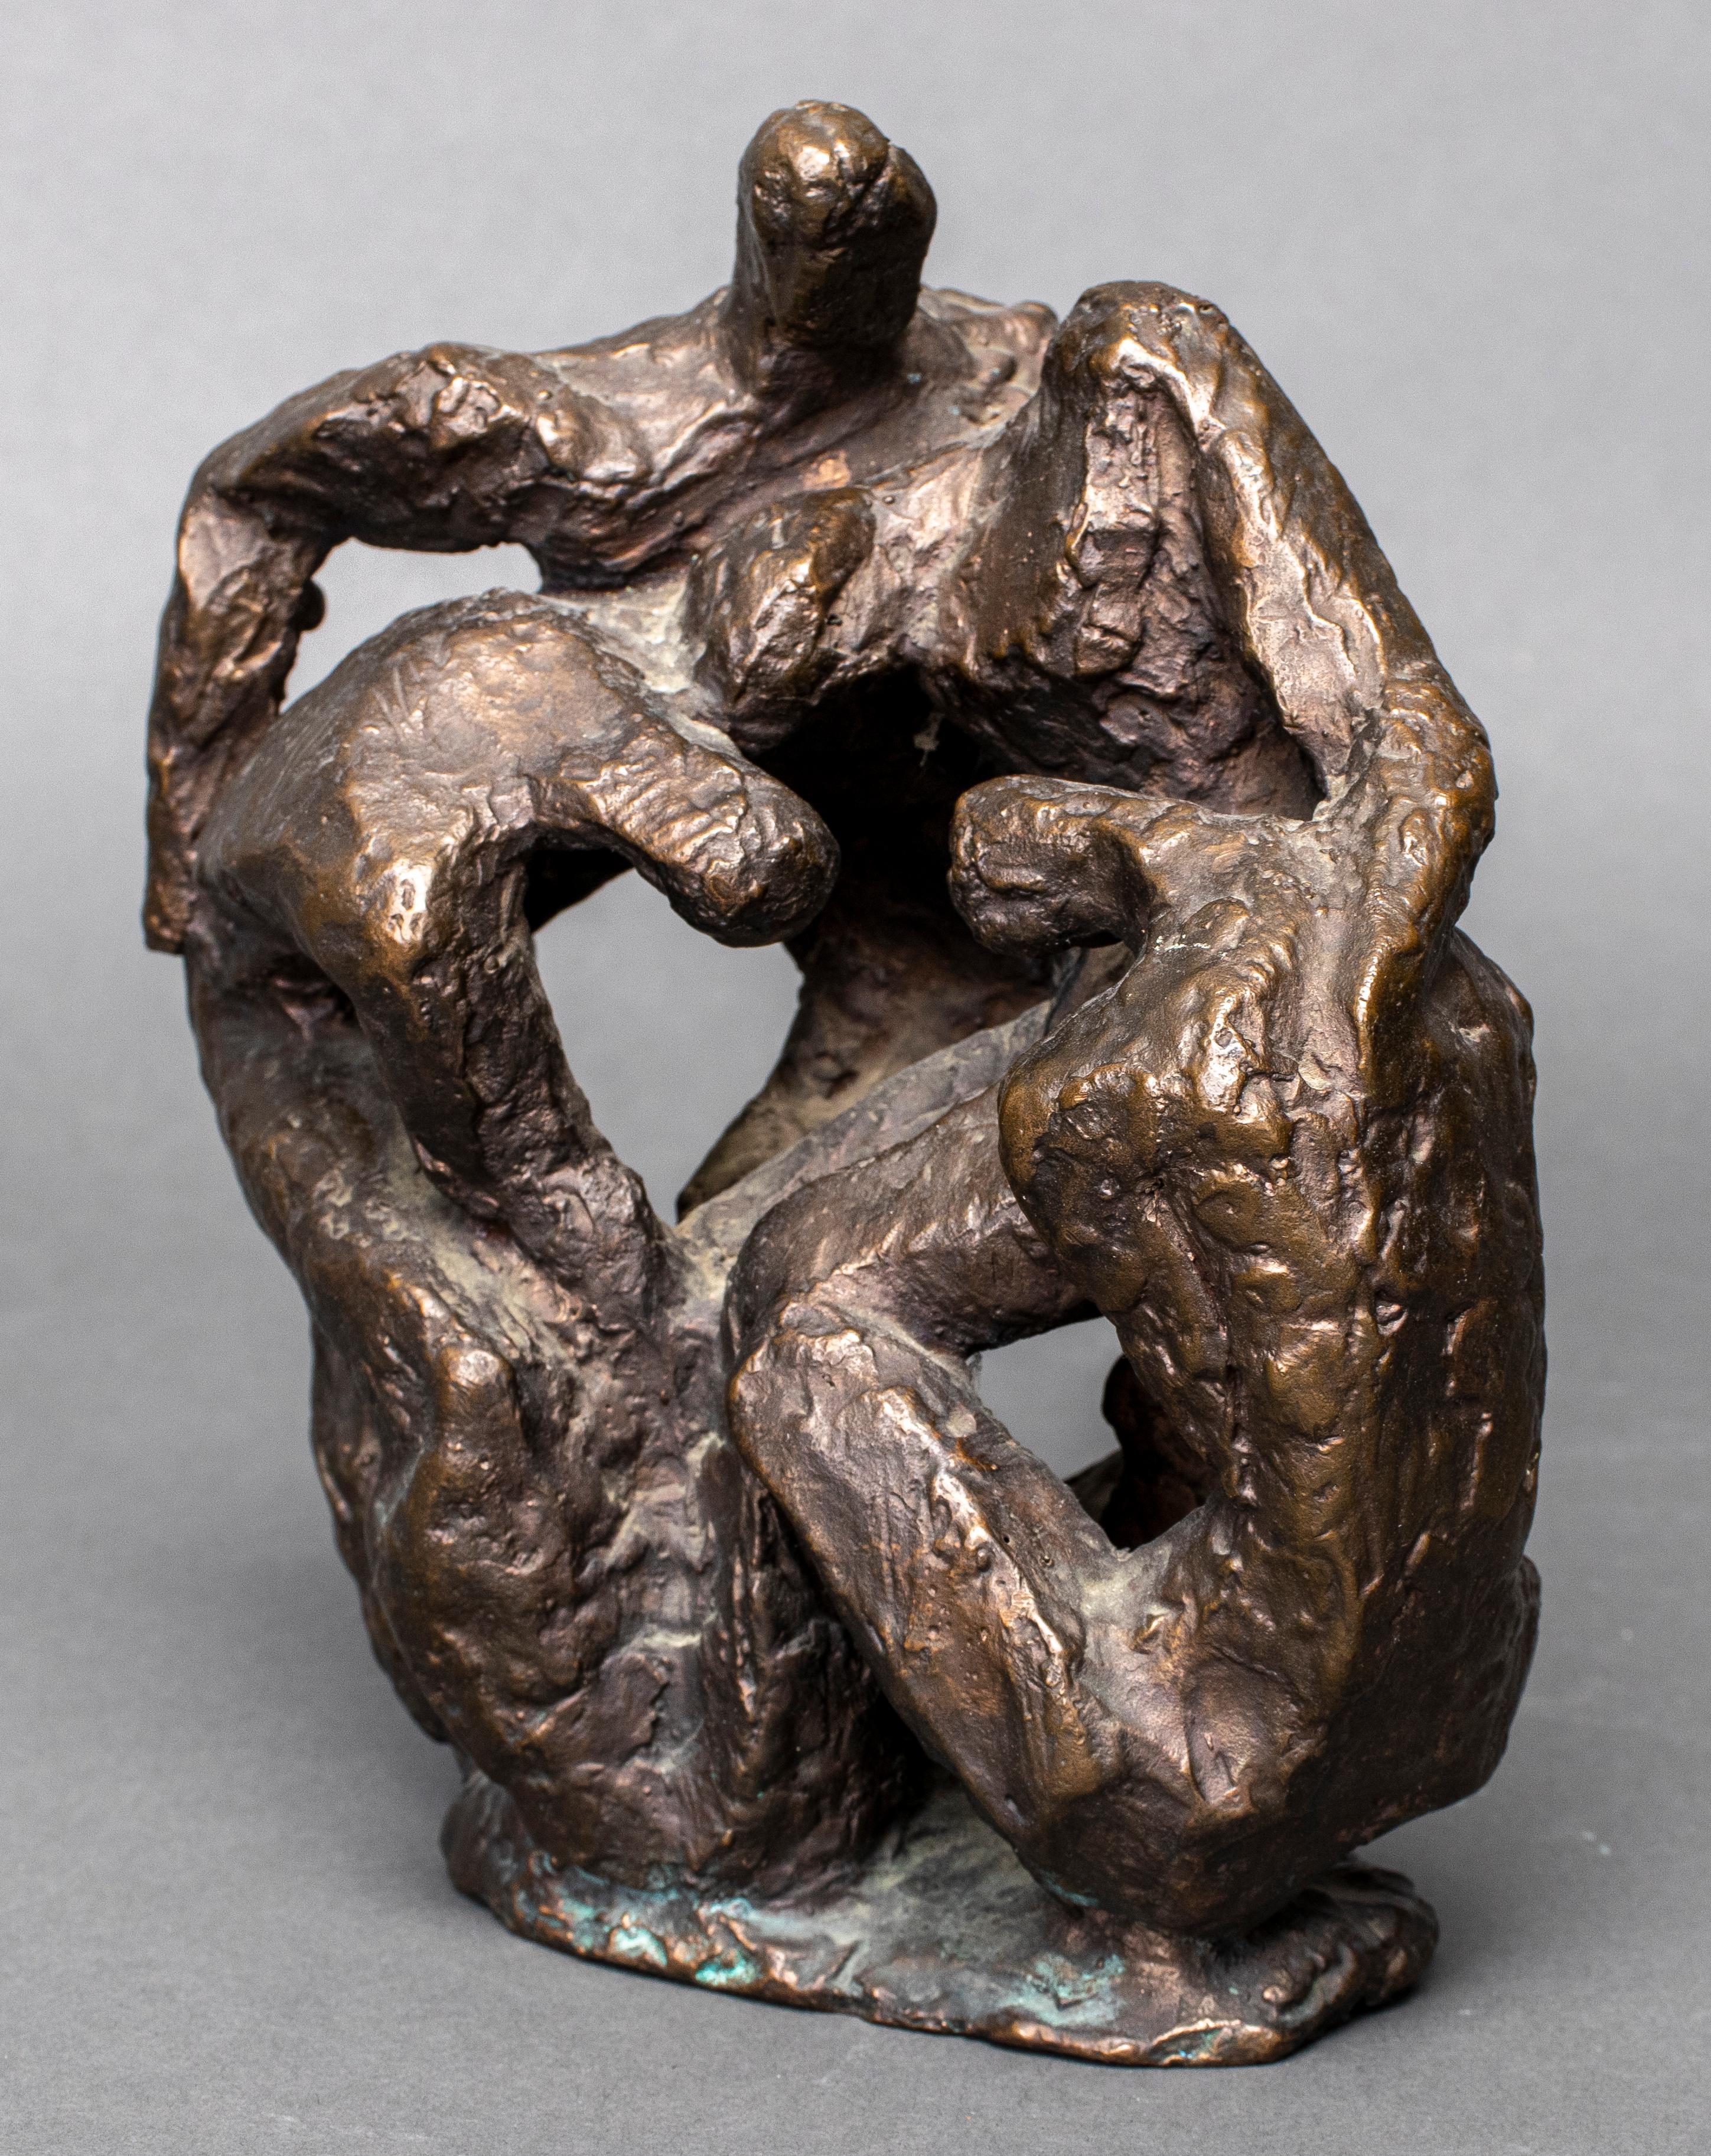 Brutalist modern bronze sculpture, depicting four interconnected figures huddled together. 7.75